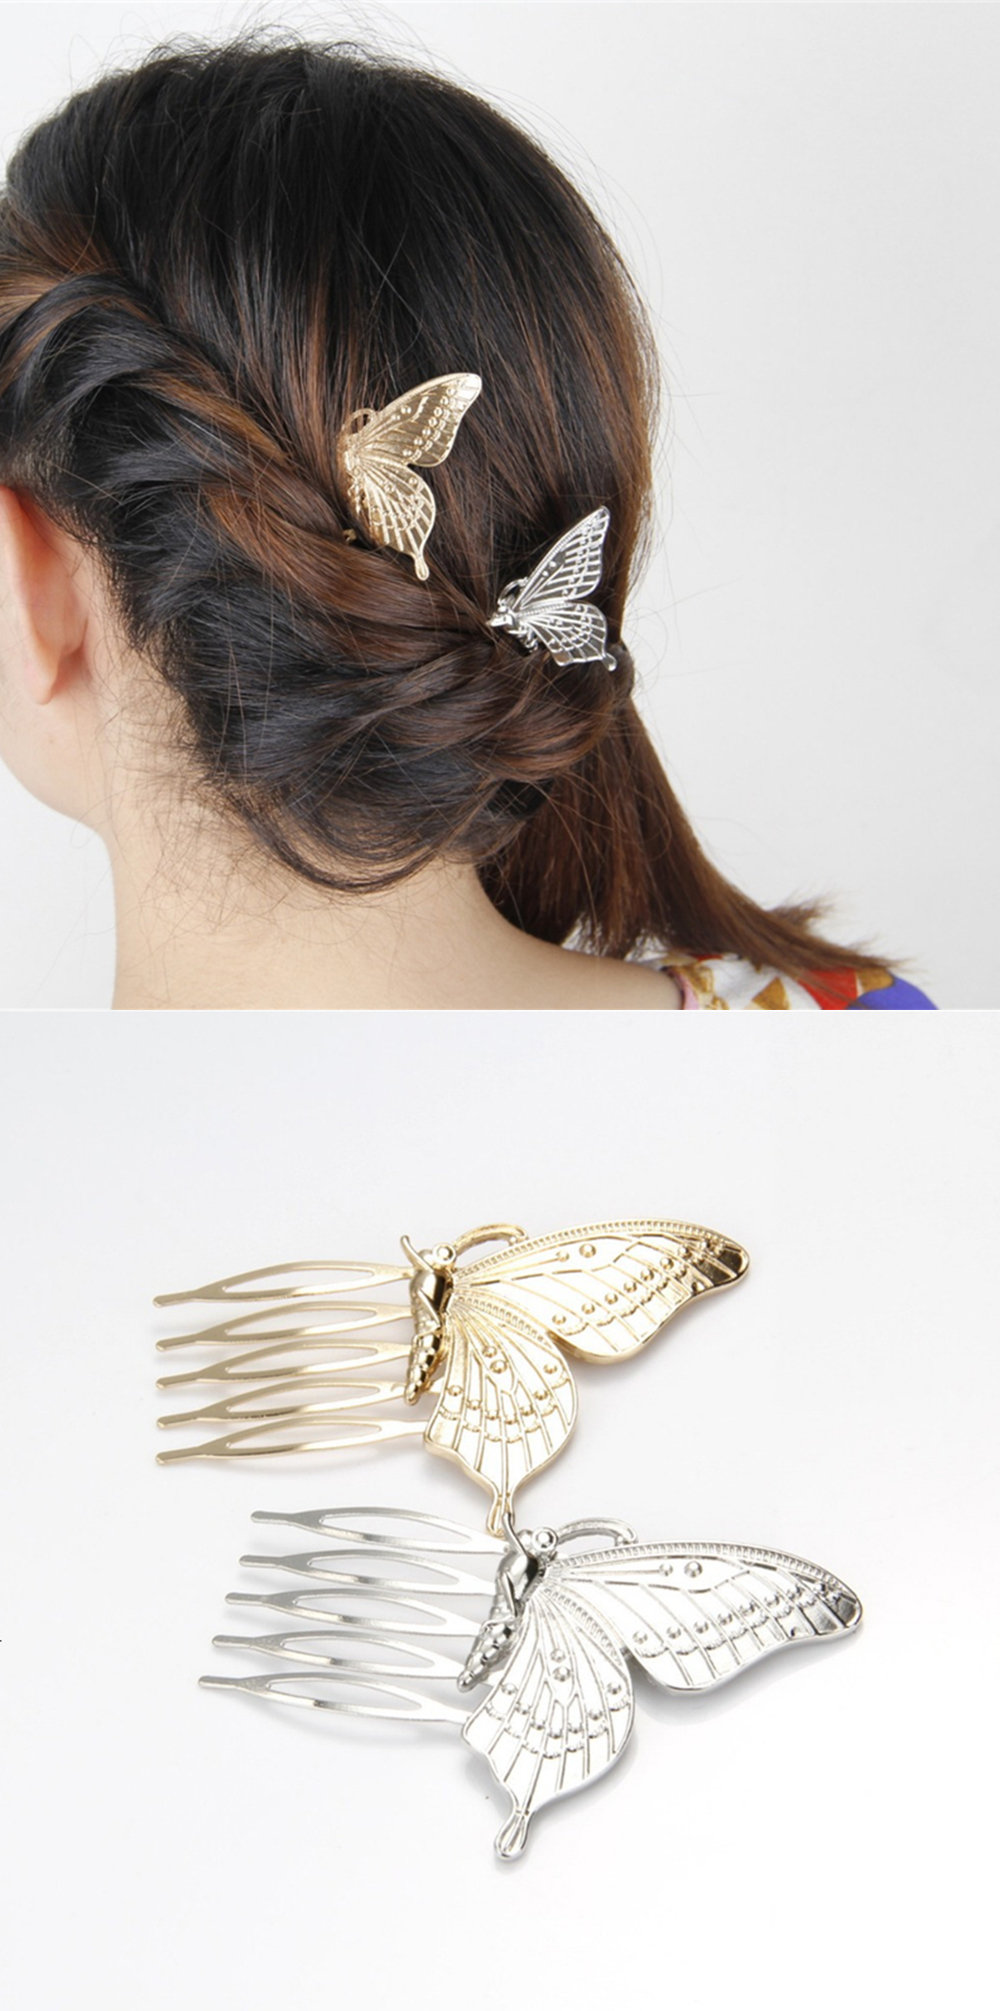 Butterfly Hair Clip - ApolloBox